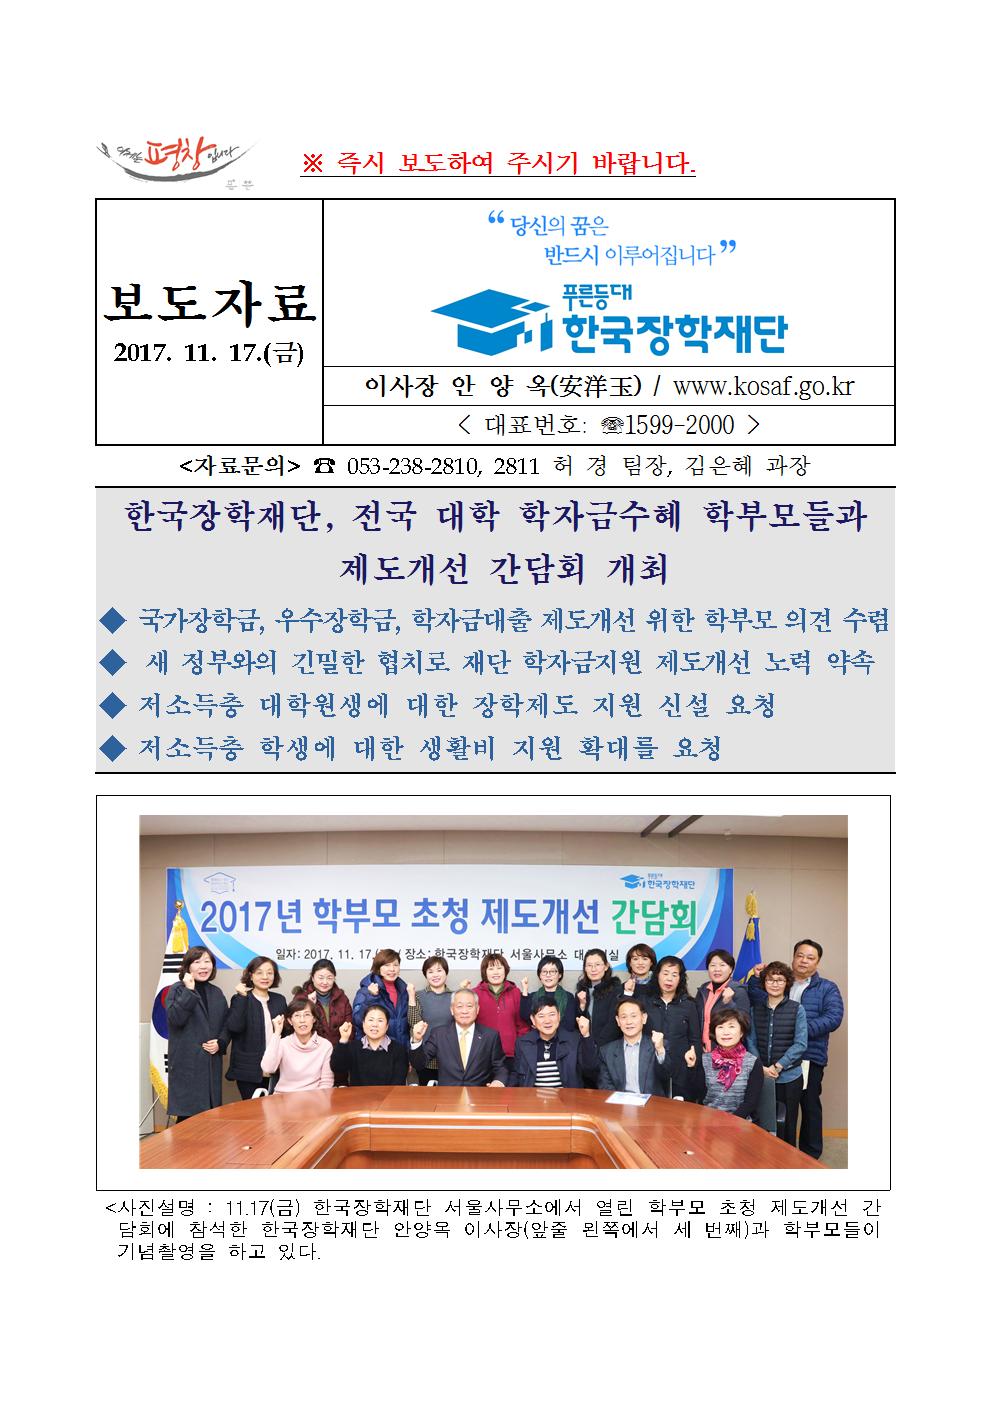 11-17(금)[보도자료] 한국장학재단, 전국 대학 학자금수혜 학부모들과 제도개선 간담회 개최관련 이미지입니다. 자세한 내용은 아래를 참고하세요.